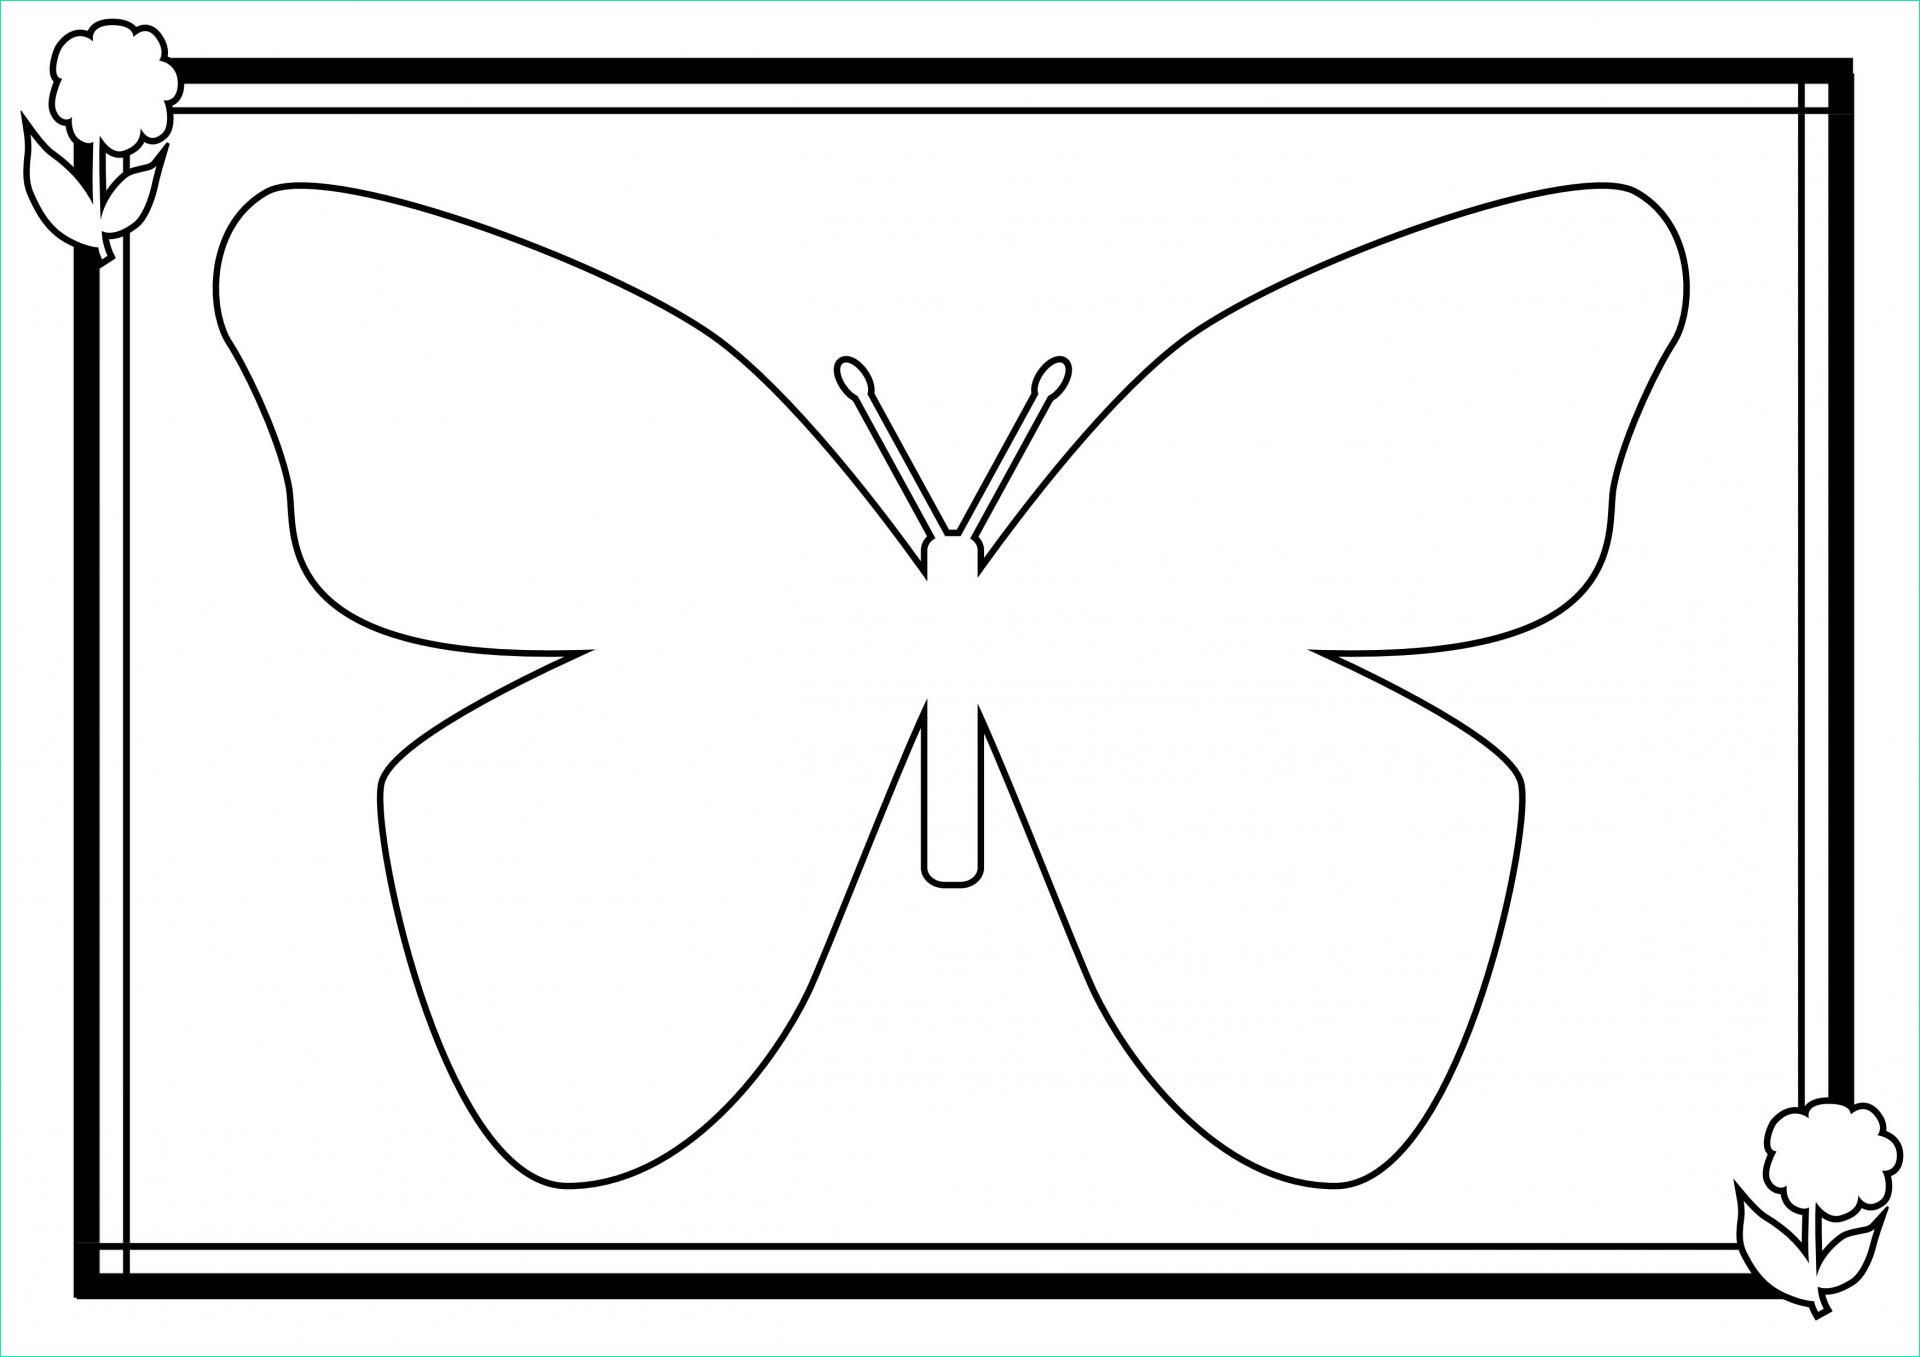 Dessin De Papillon A Imprimer Gratuit Beau Collection Coloriage De Papillon A Imprimer Gratuit